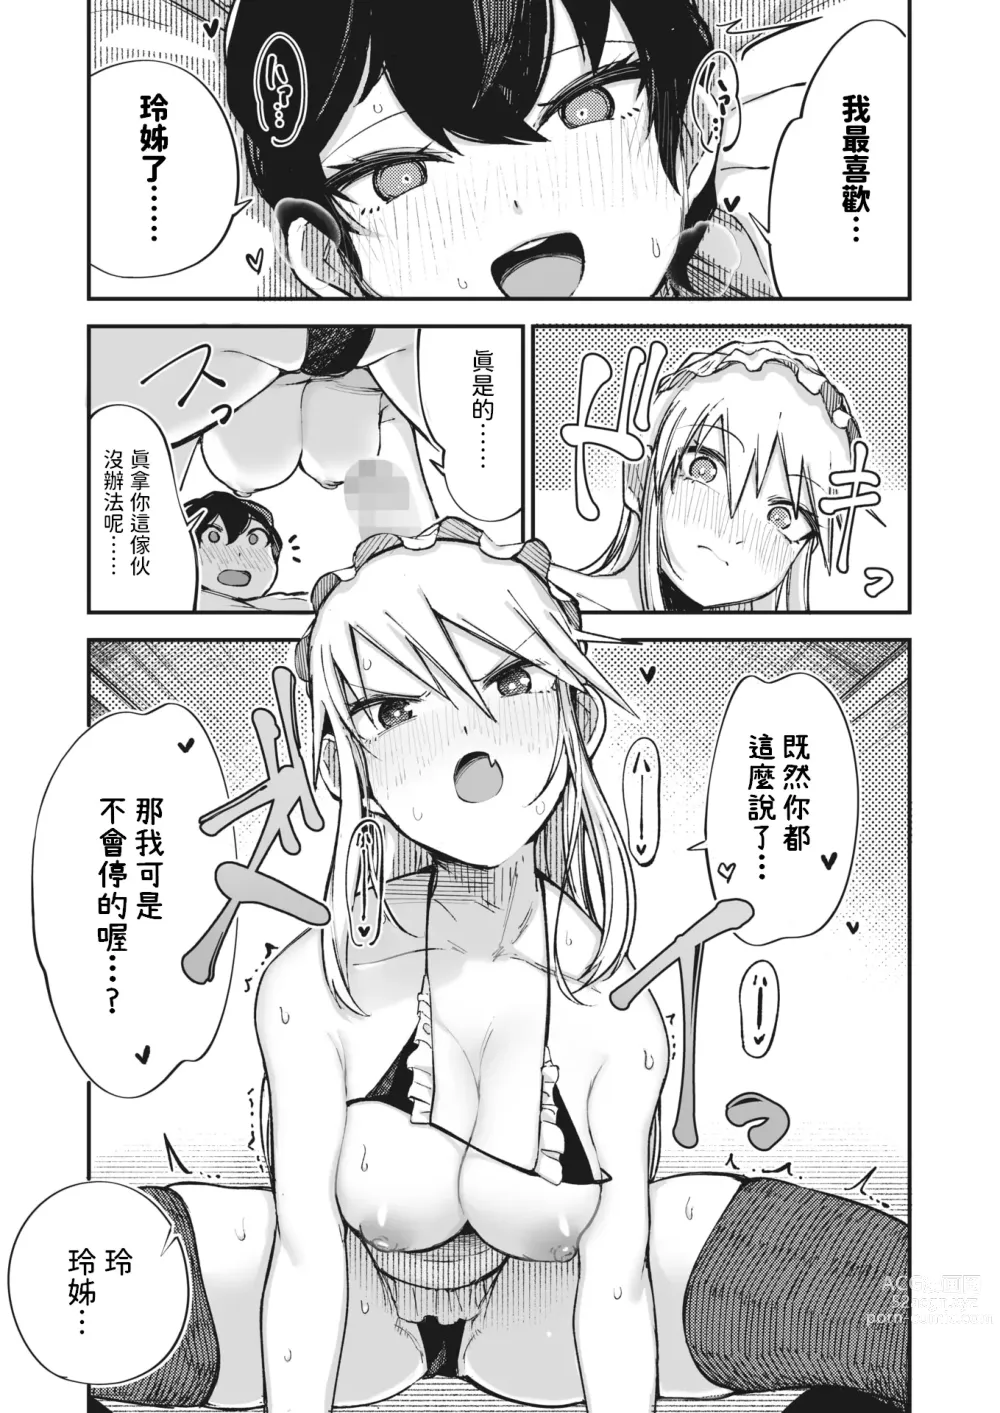 Page 15 of manga Furyou Shoujo,   Kousei shimasu... ka!?